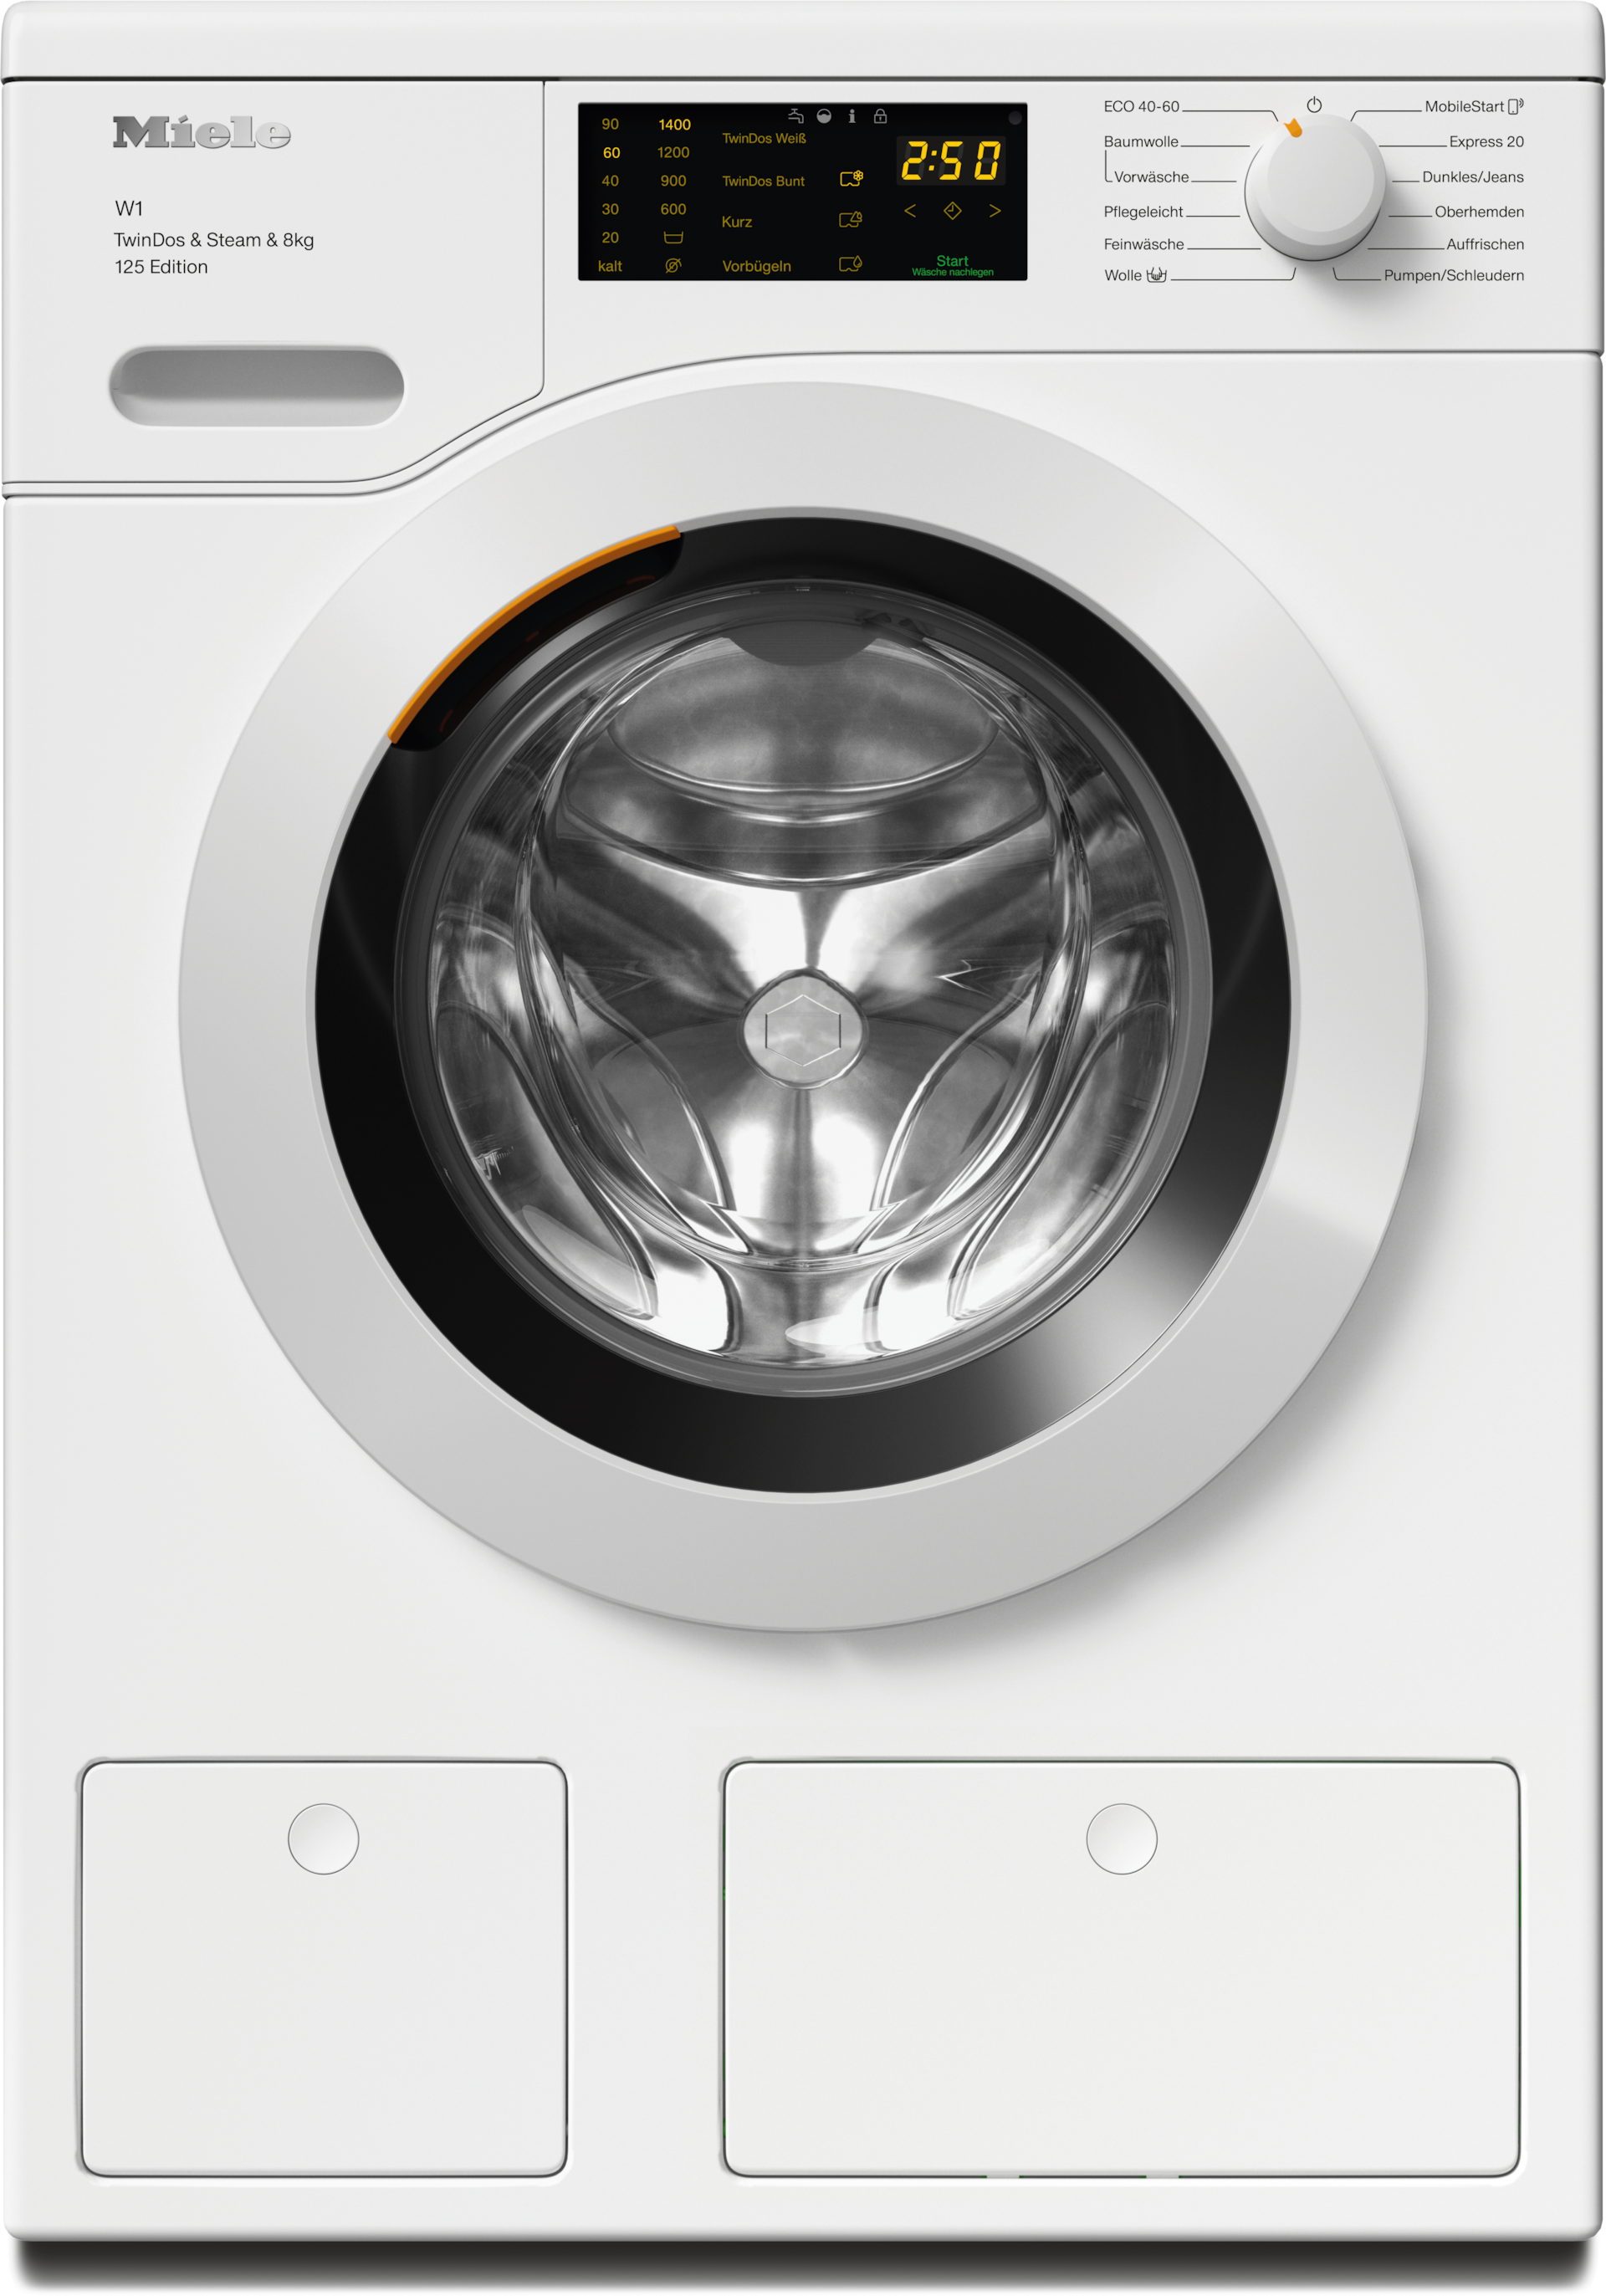 Waschmaschinen - WCB680 WPS 125 Edition Lotosweiß - 1